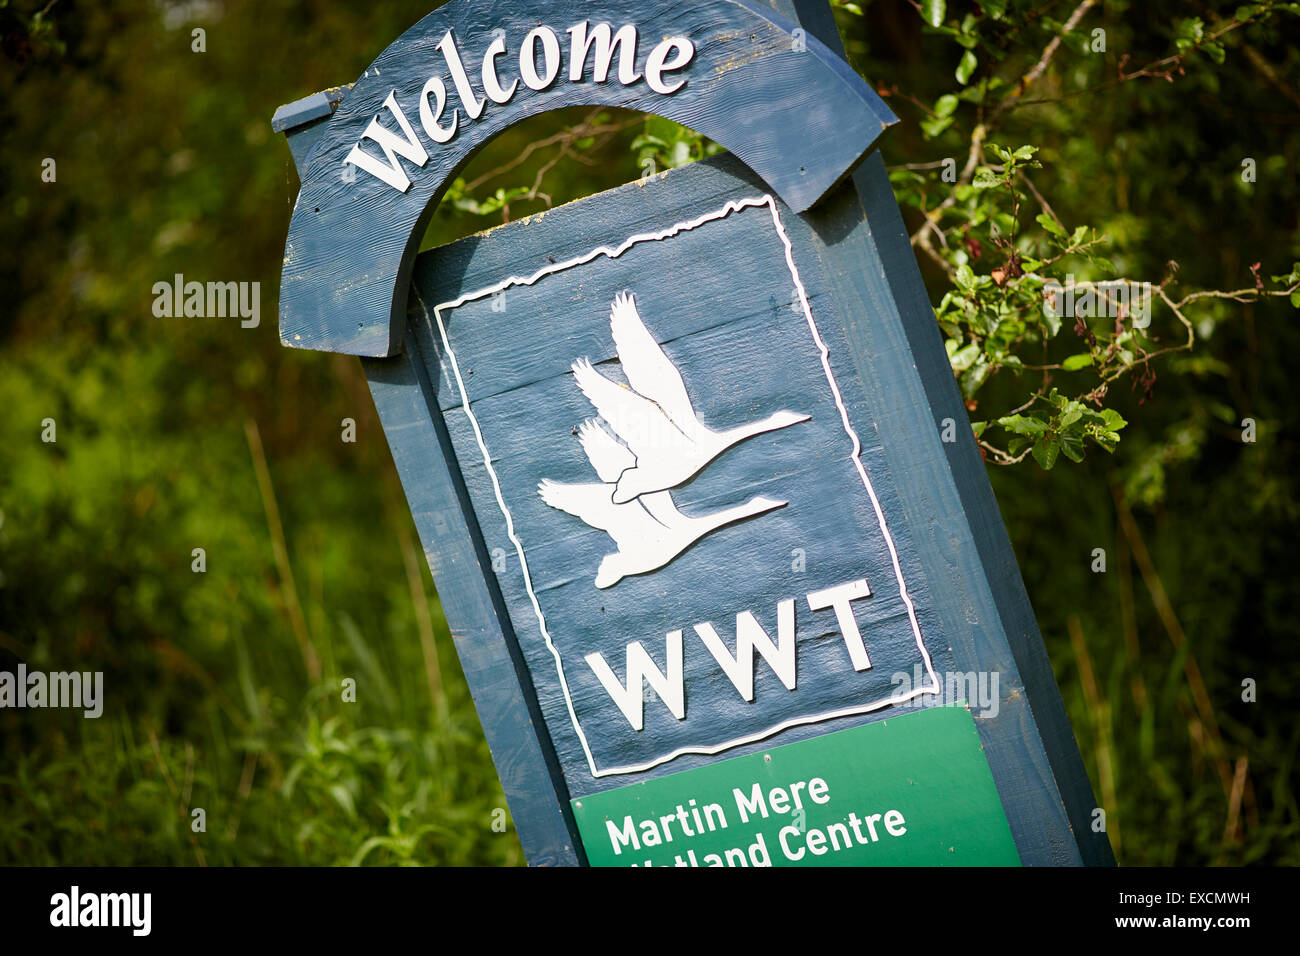 Bilder rund um Southport abgebildet willkommen zu Martin bloße Wetlands Centre Zeichens WWT Martin nur ein Feuchtgebiet Natur behalten ma Stockfoto